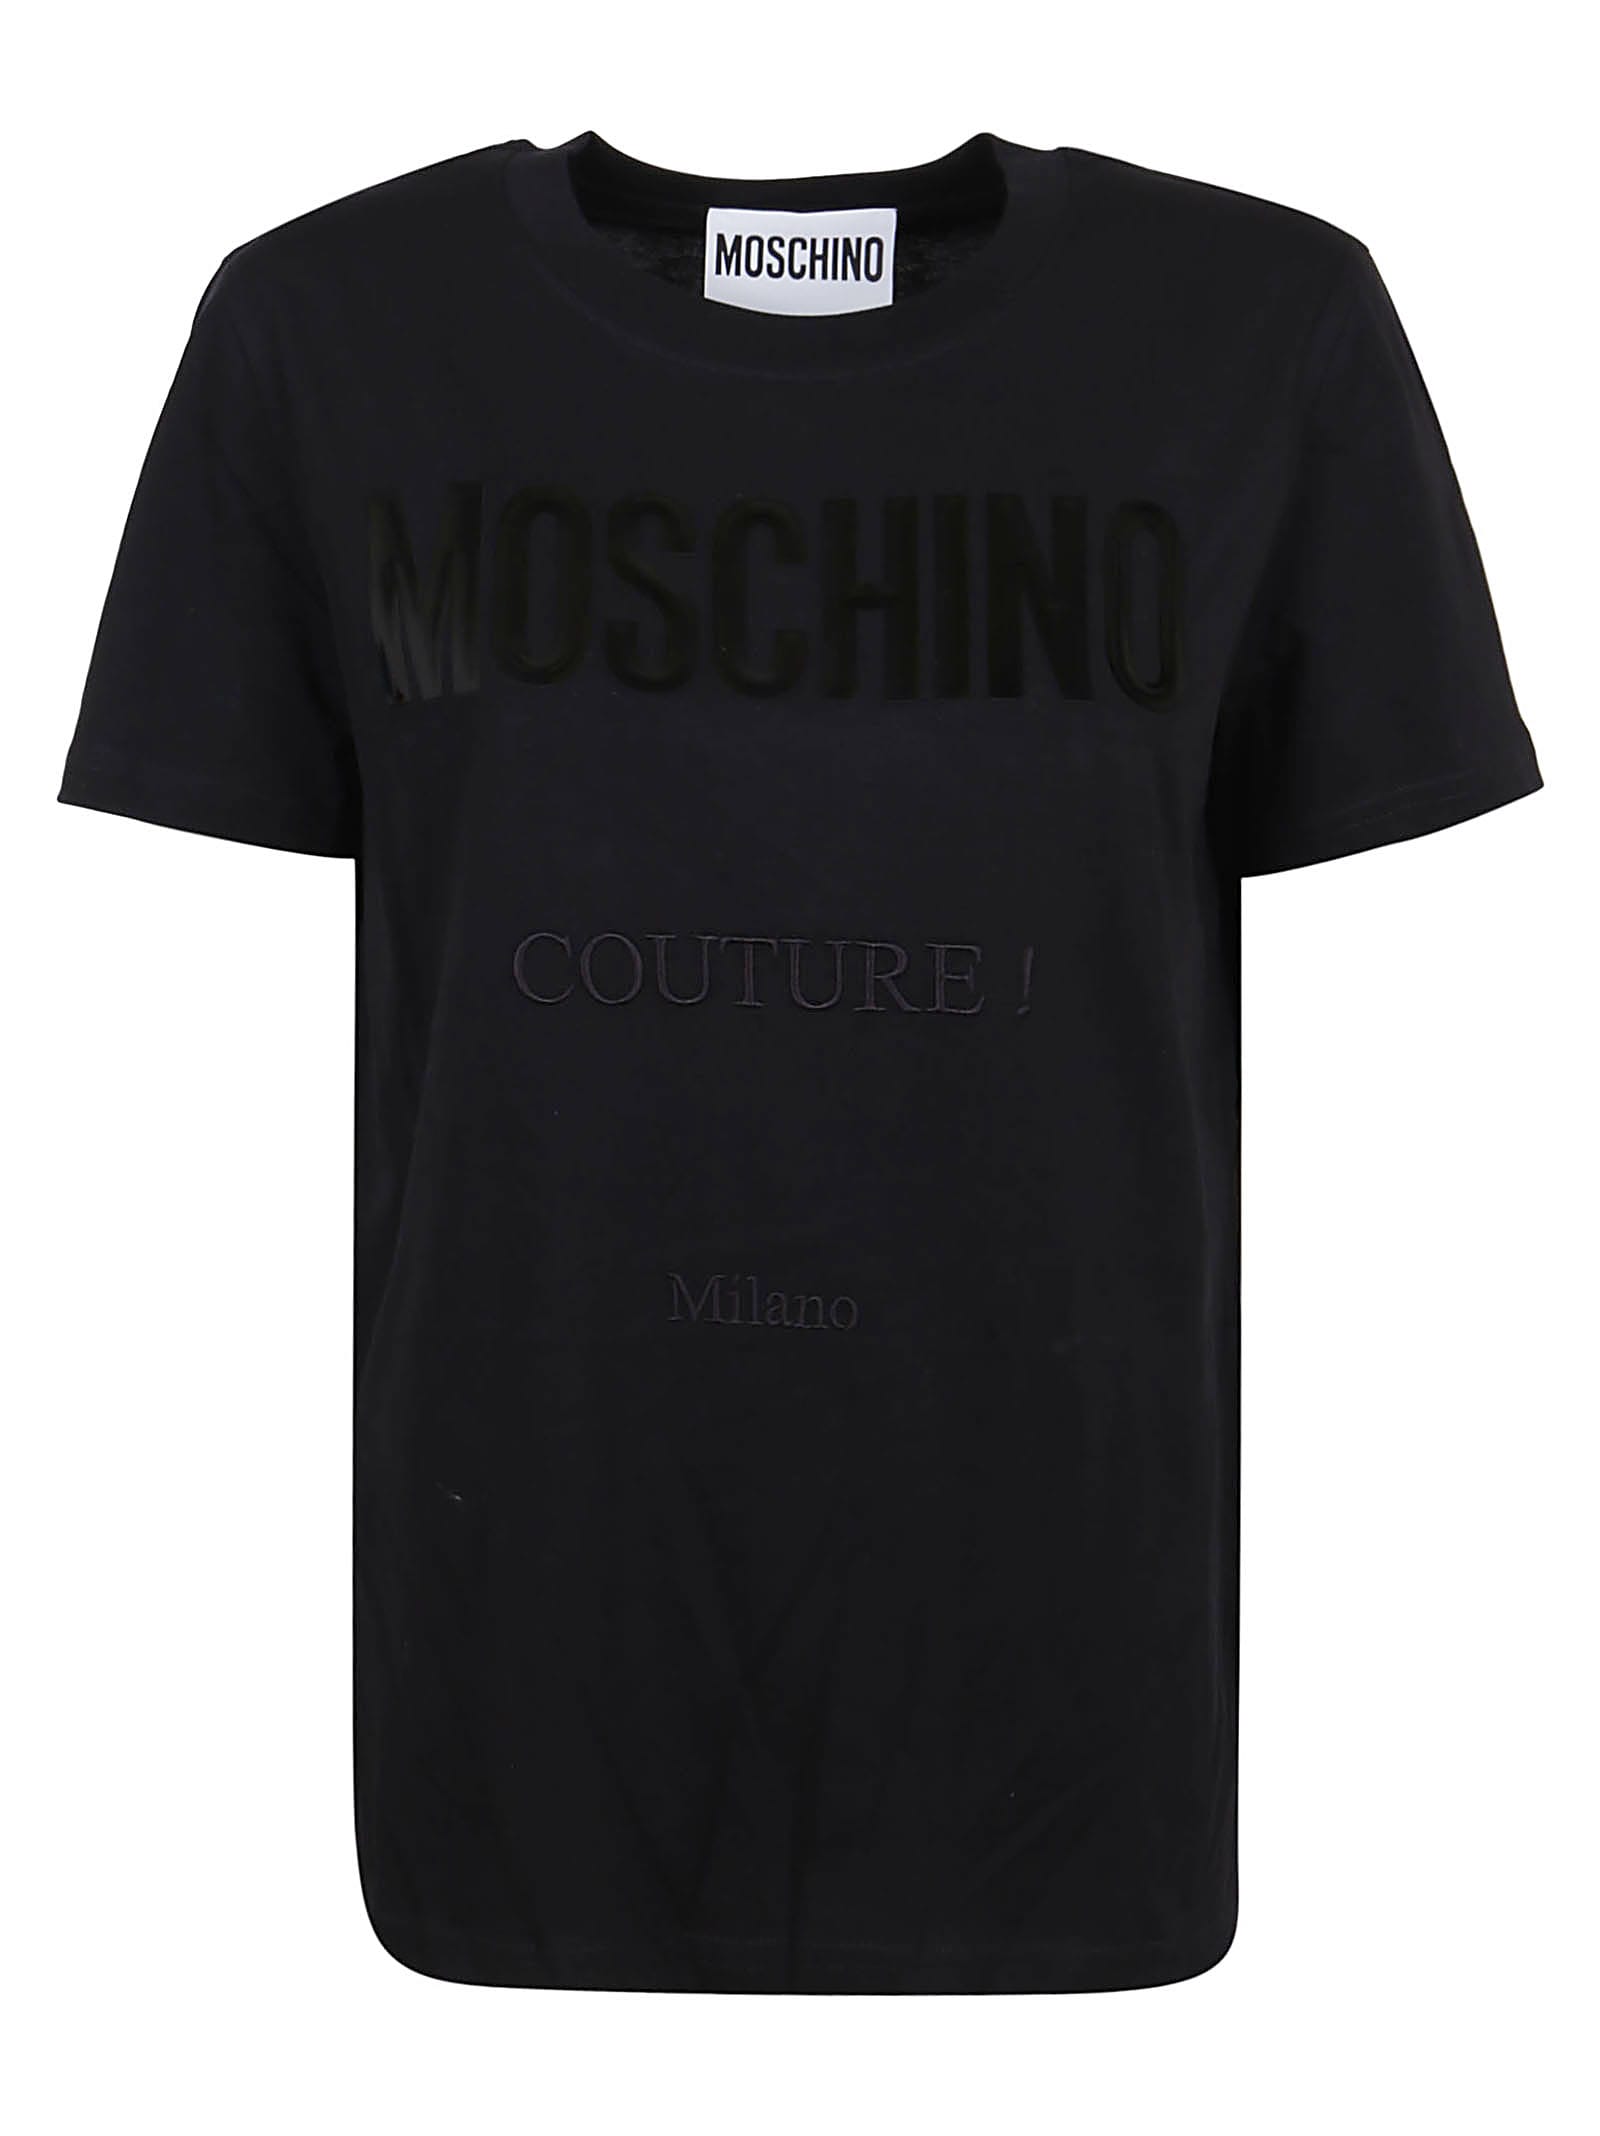 Moschino Vinyl Couture Milano T-shirt